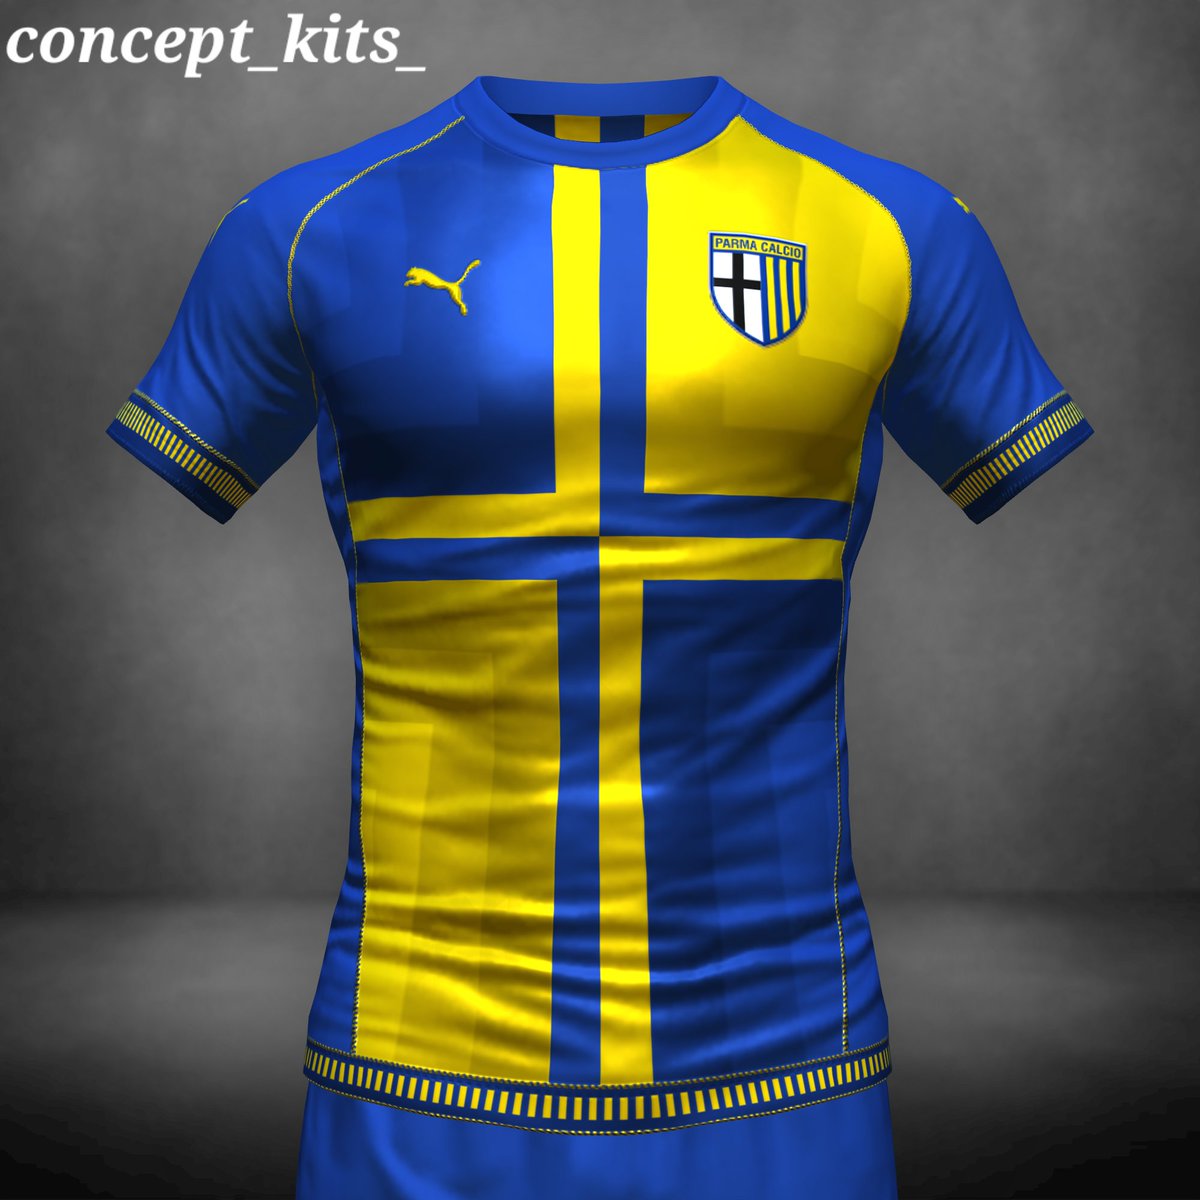 Concept @1913parmacalcio kit by @pumafootball #conceptkit #designkit #kitdesign #conceptdesign #conceptkits #design #designfootball #fifa22 #fifakitcreator #parma #parmacalcio #parma1913 #parmafc #crociati #gialloblu #enniotardini #ParmaCalcioFantasy @Fanzclub_Parma